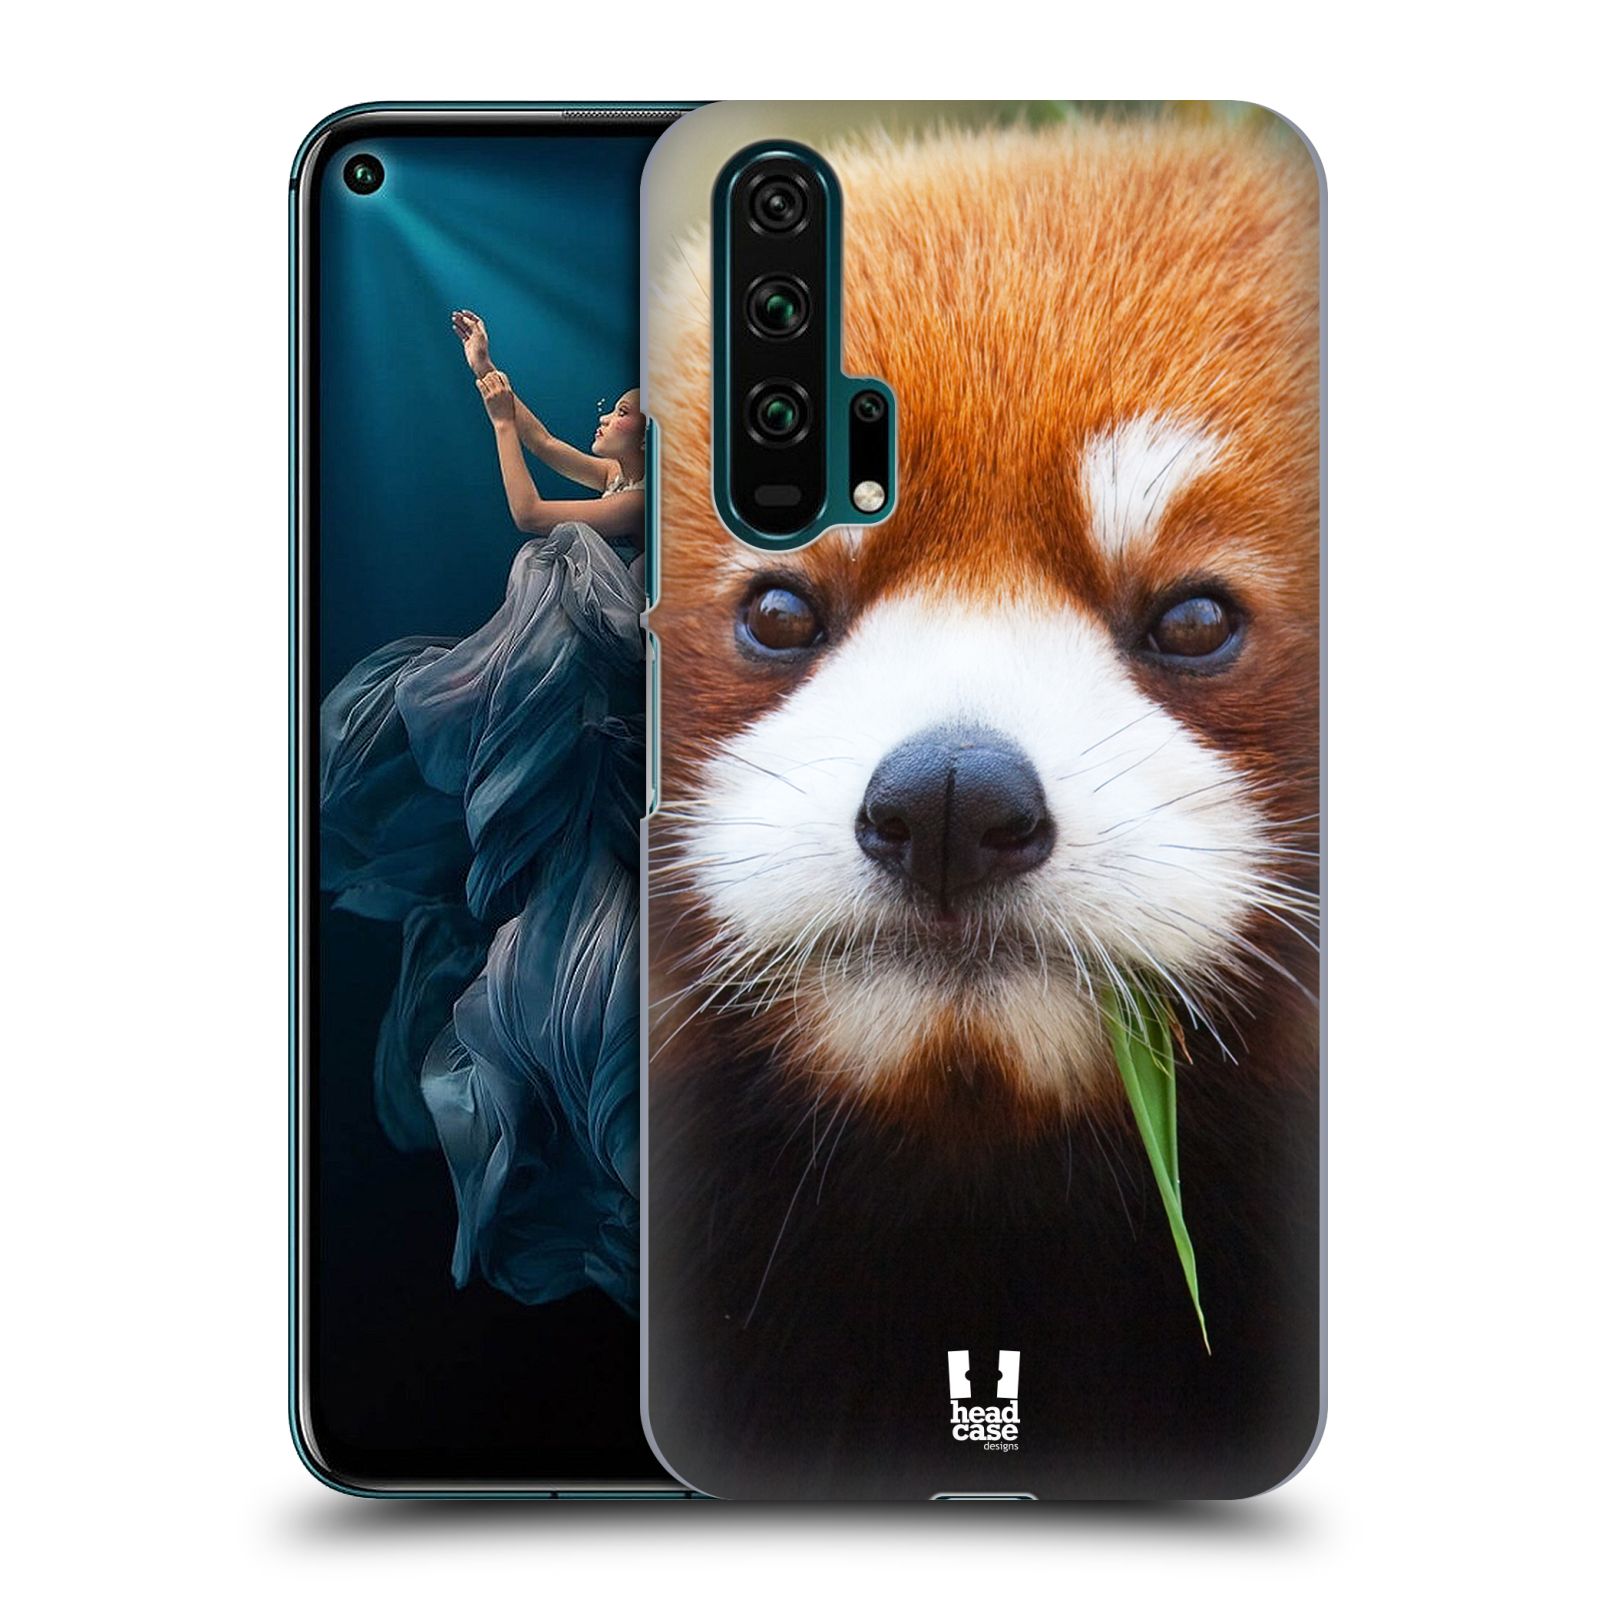 Pouzdro na mobil Honor 20 PRO - HEAD CASE - vzor Divočina, Divoký život a zvířata foto PANDA HNĚDÁ